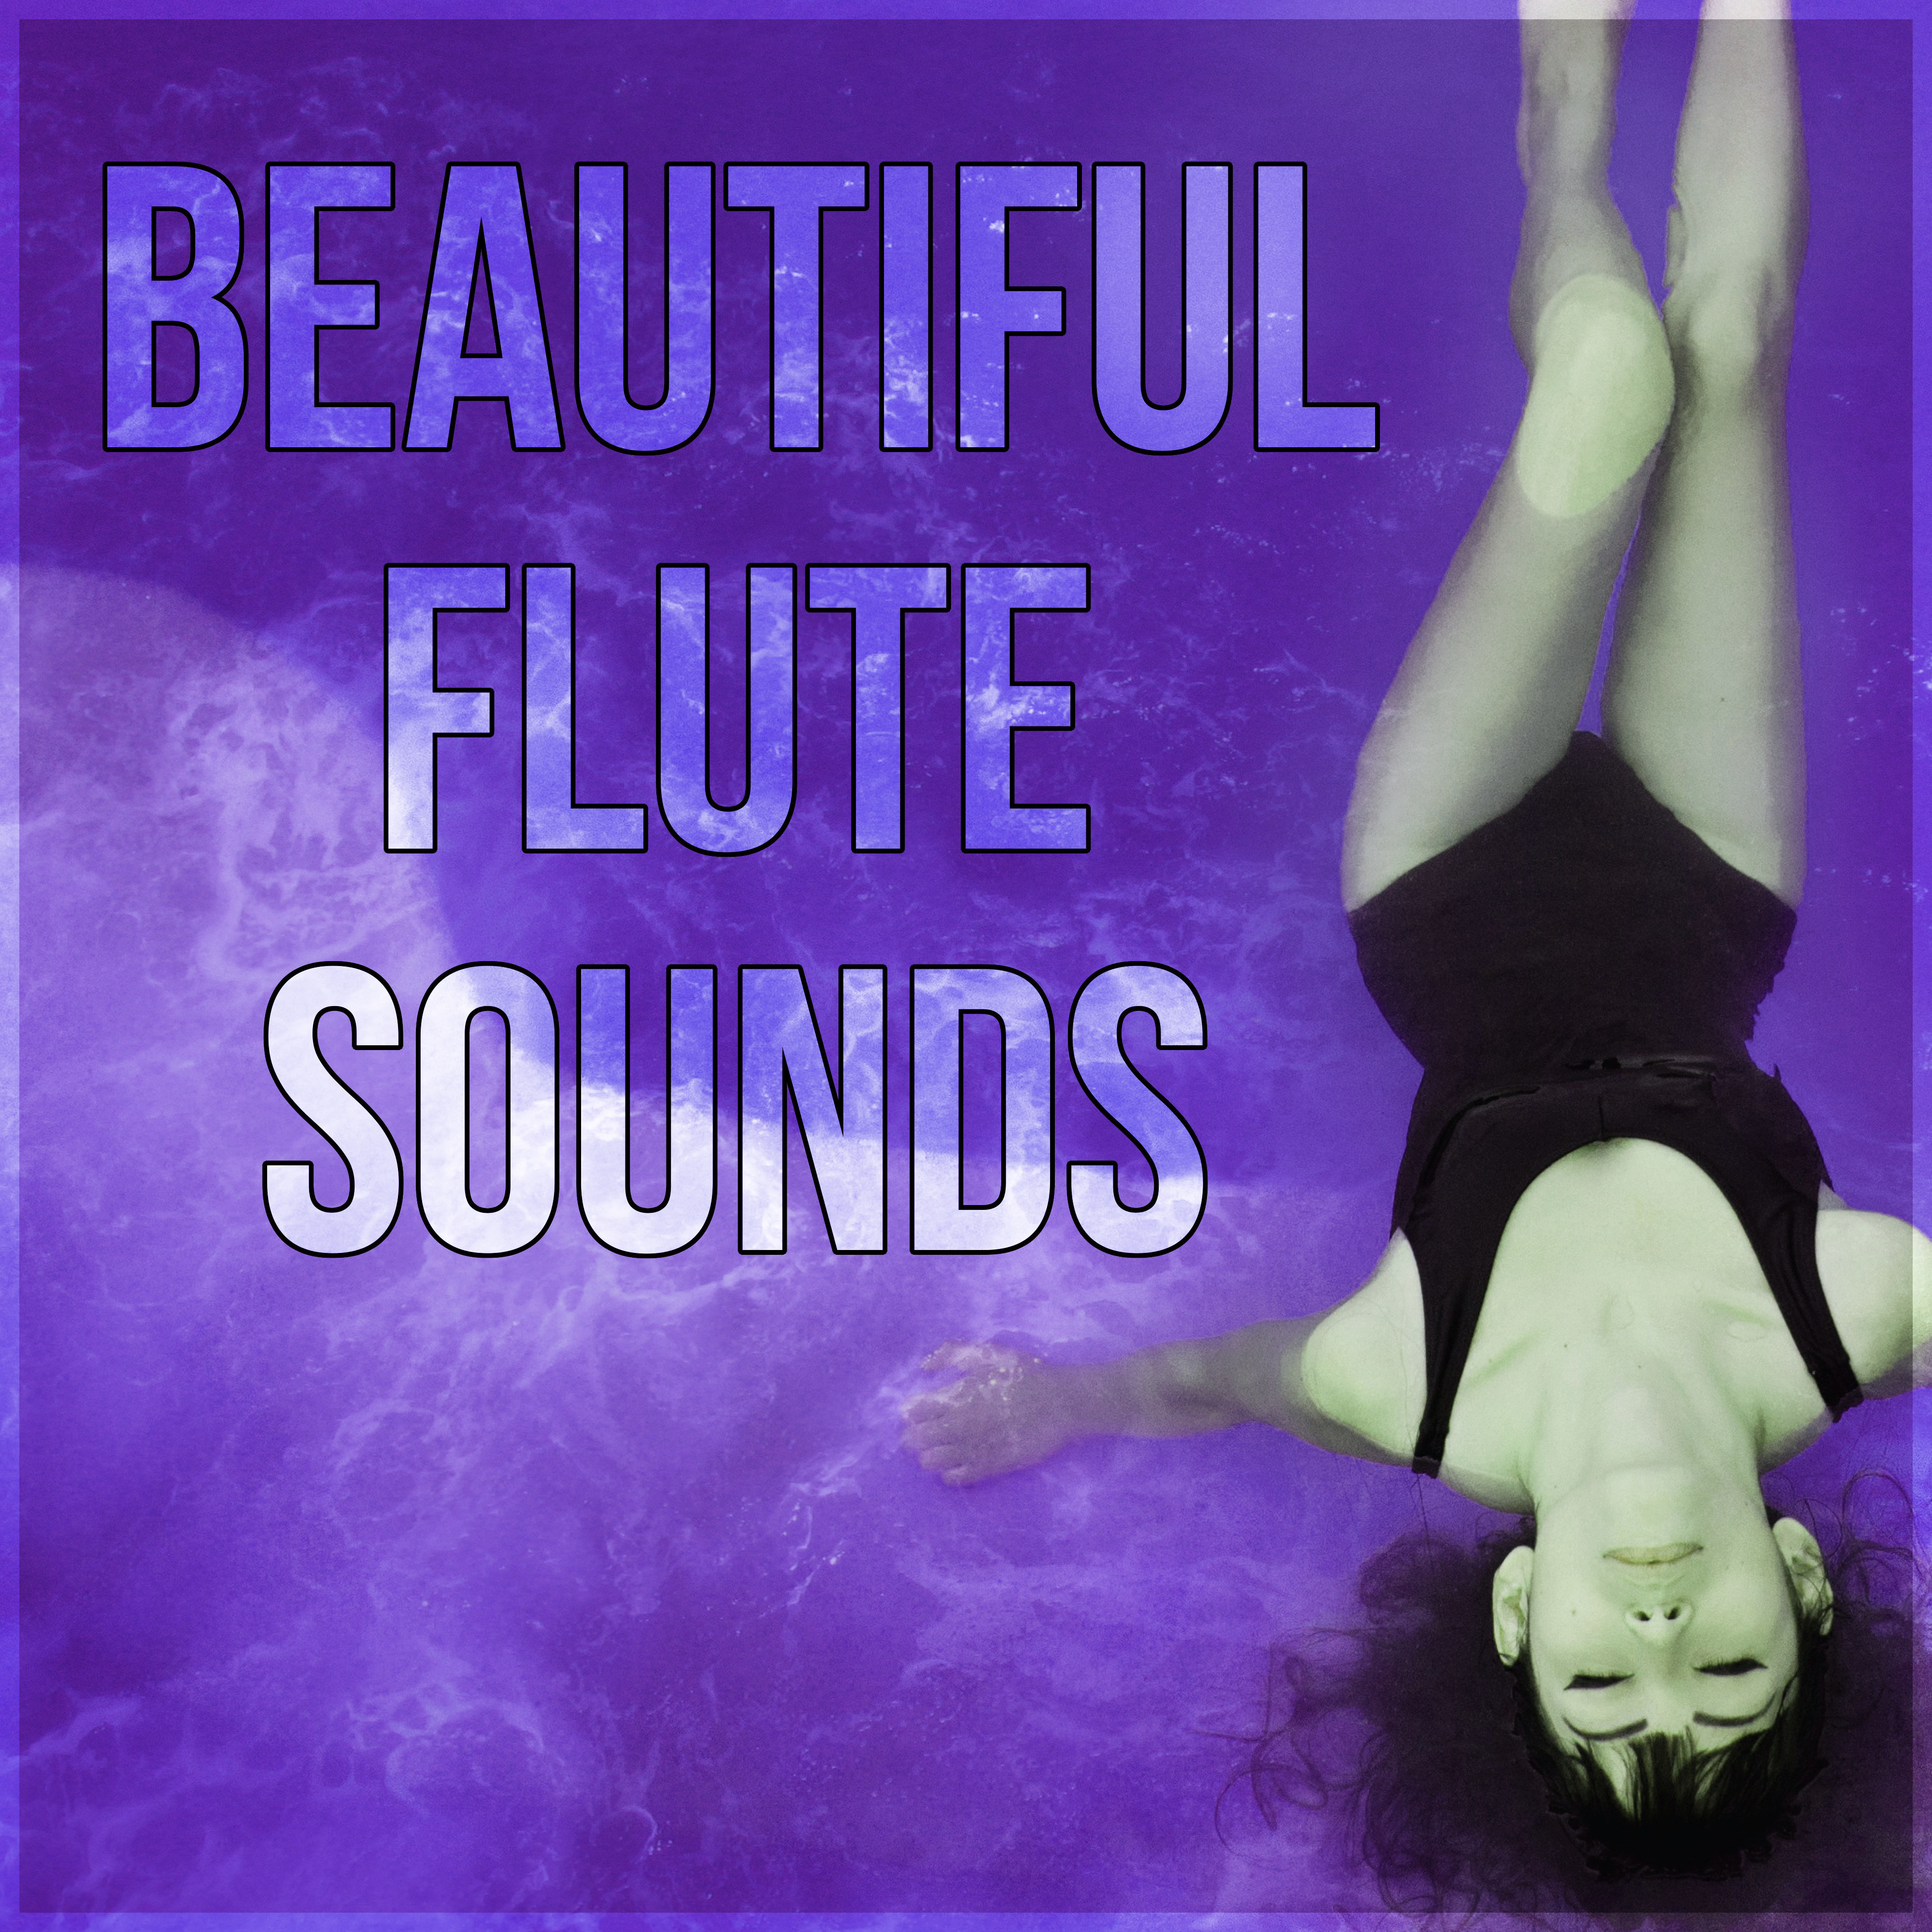 Beautiful Flute Sounds - Deep Zen Meditation & Well Being, Pan Flute Sounds for Healing Massage, Peaceful Music